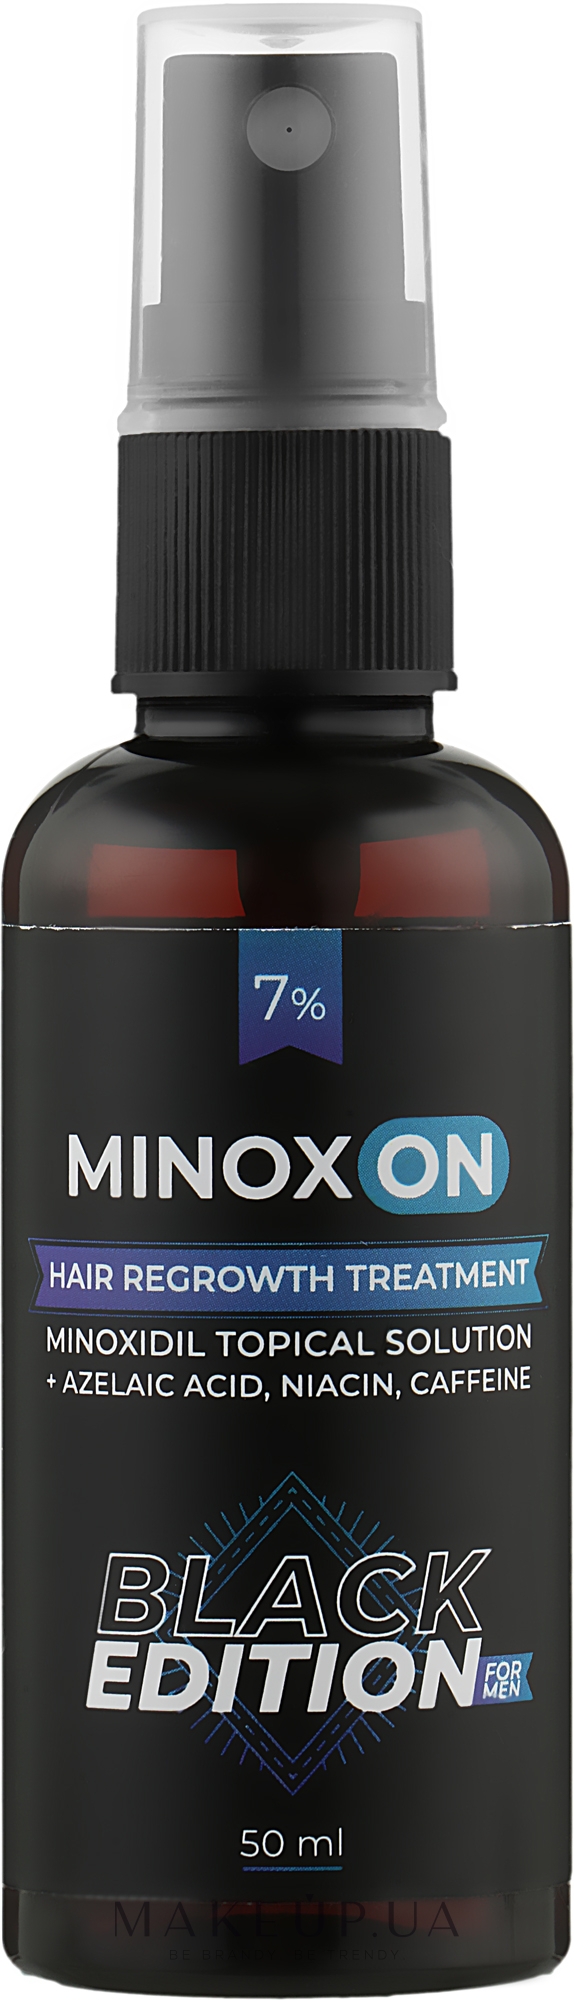 Лосьйон чоловічий для росту волосся - Minoxon Black Edition For Men Hair Regrowht Treatment (Minoxidil 7%) — фото 50ml